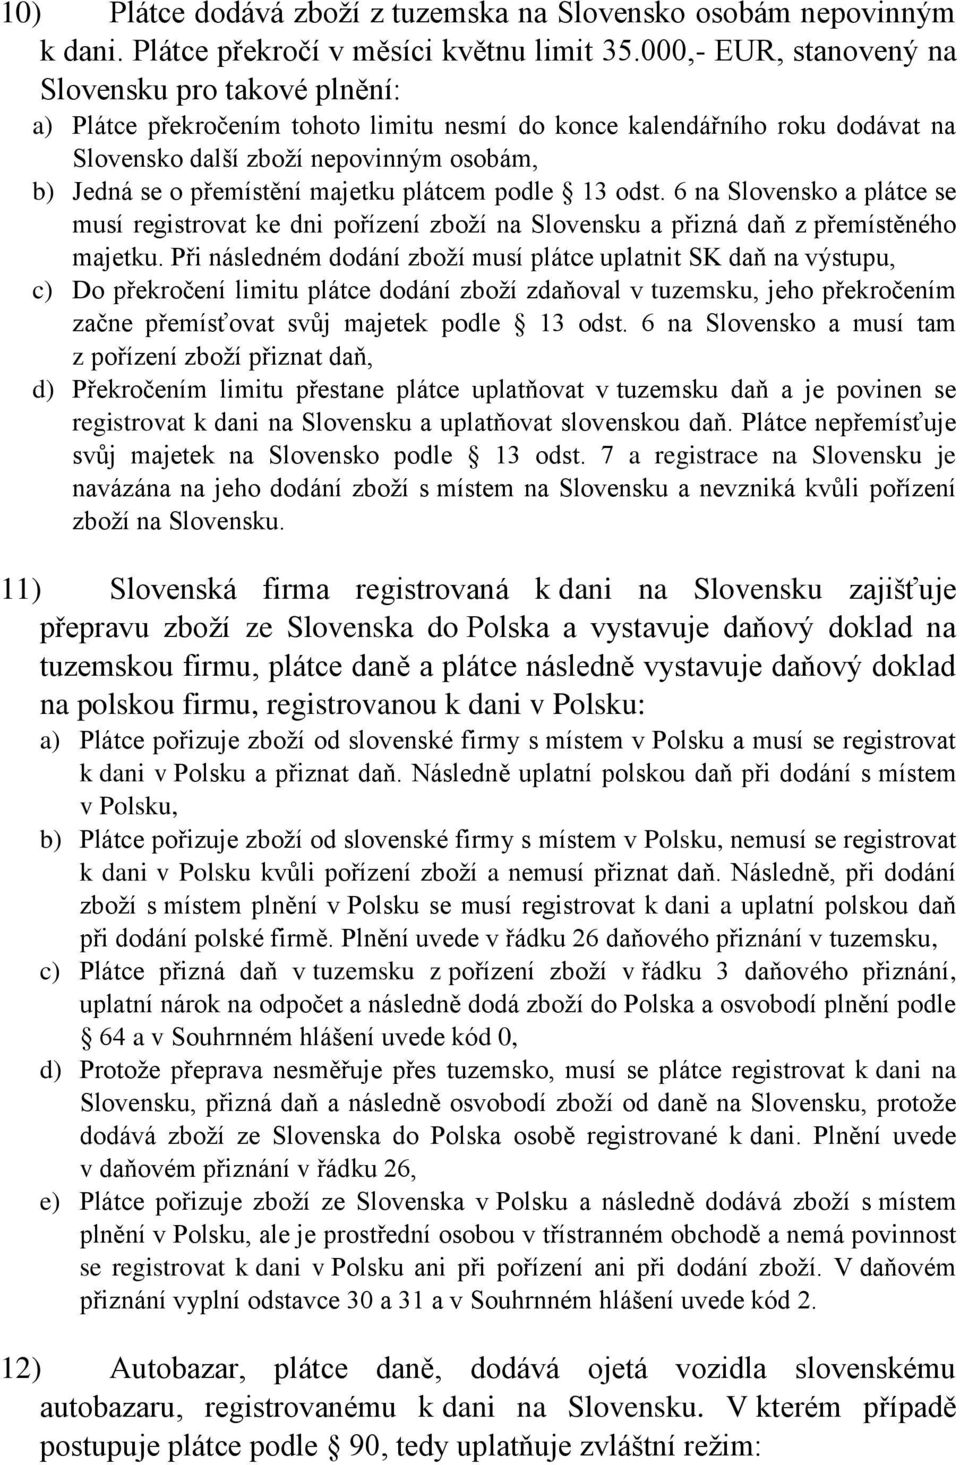 majetku plátcem podle 13 odst. 6 na Slovensko a plátce se musí registrovat ke dni pořízení zboží na Slovensku a přizná daň z přemístěného majetku.